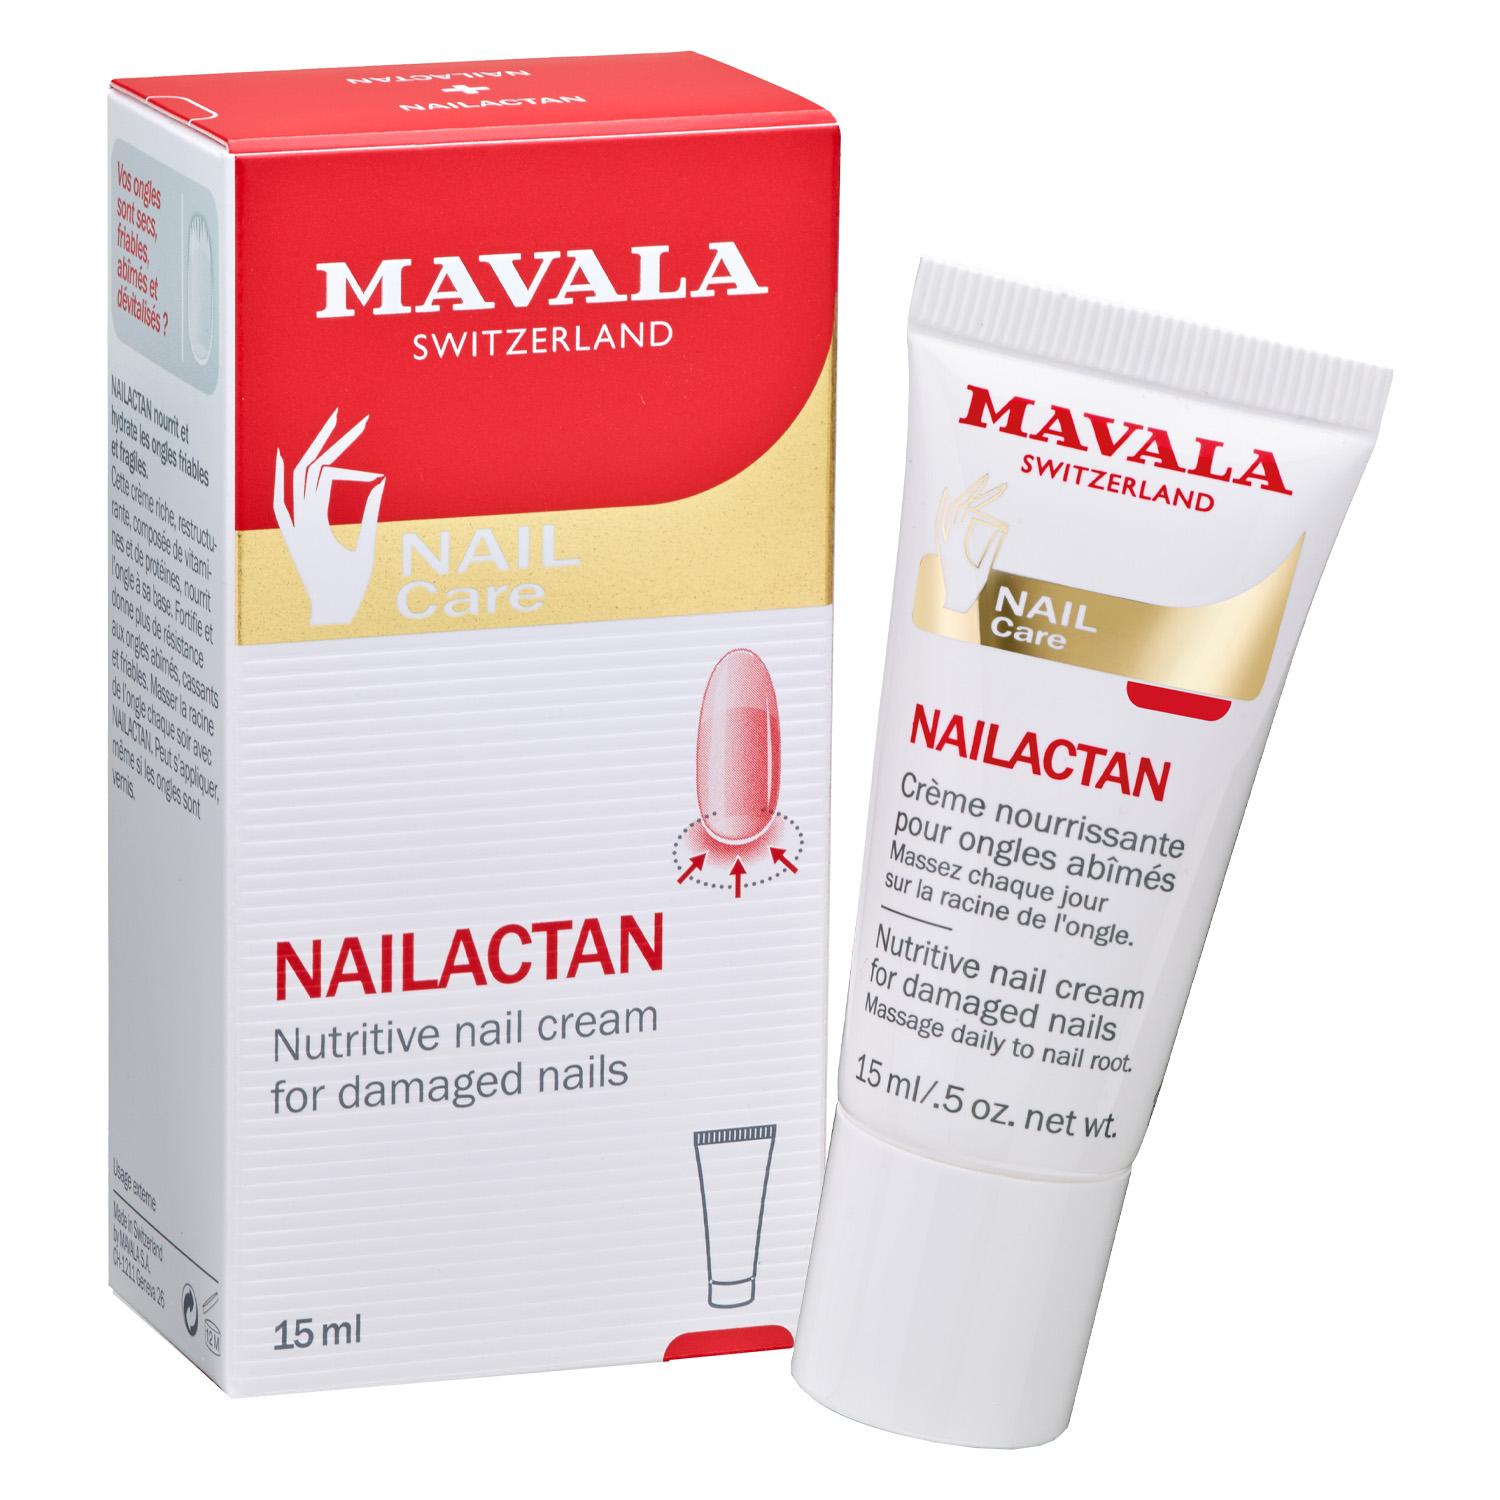 MAVALA Care - Nailactan en tube